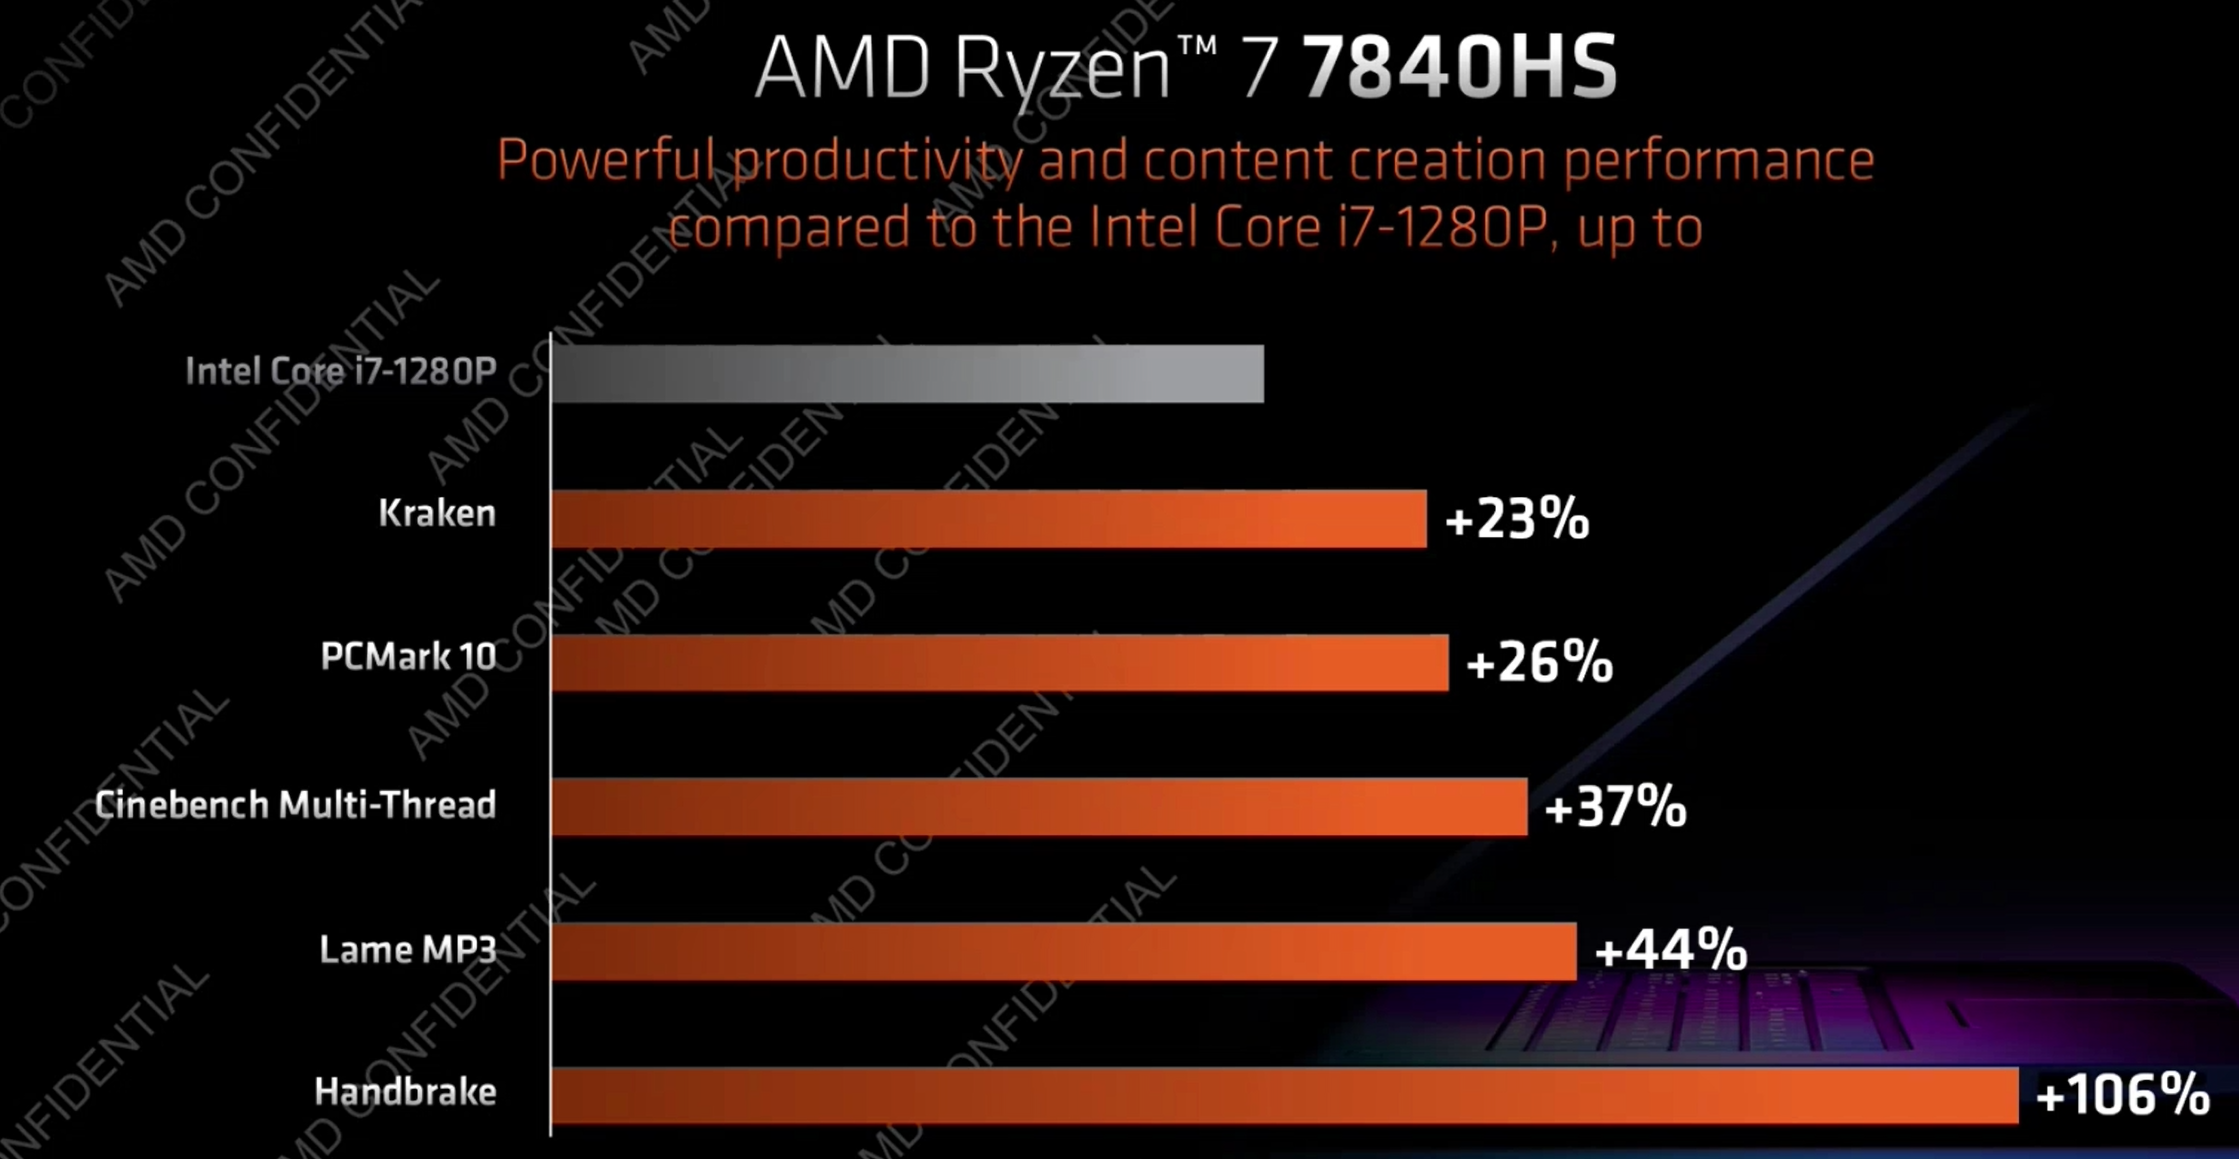 AMD Ryzen 7 7840HS Mobile Produktivität